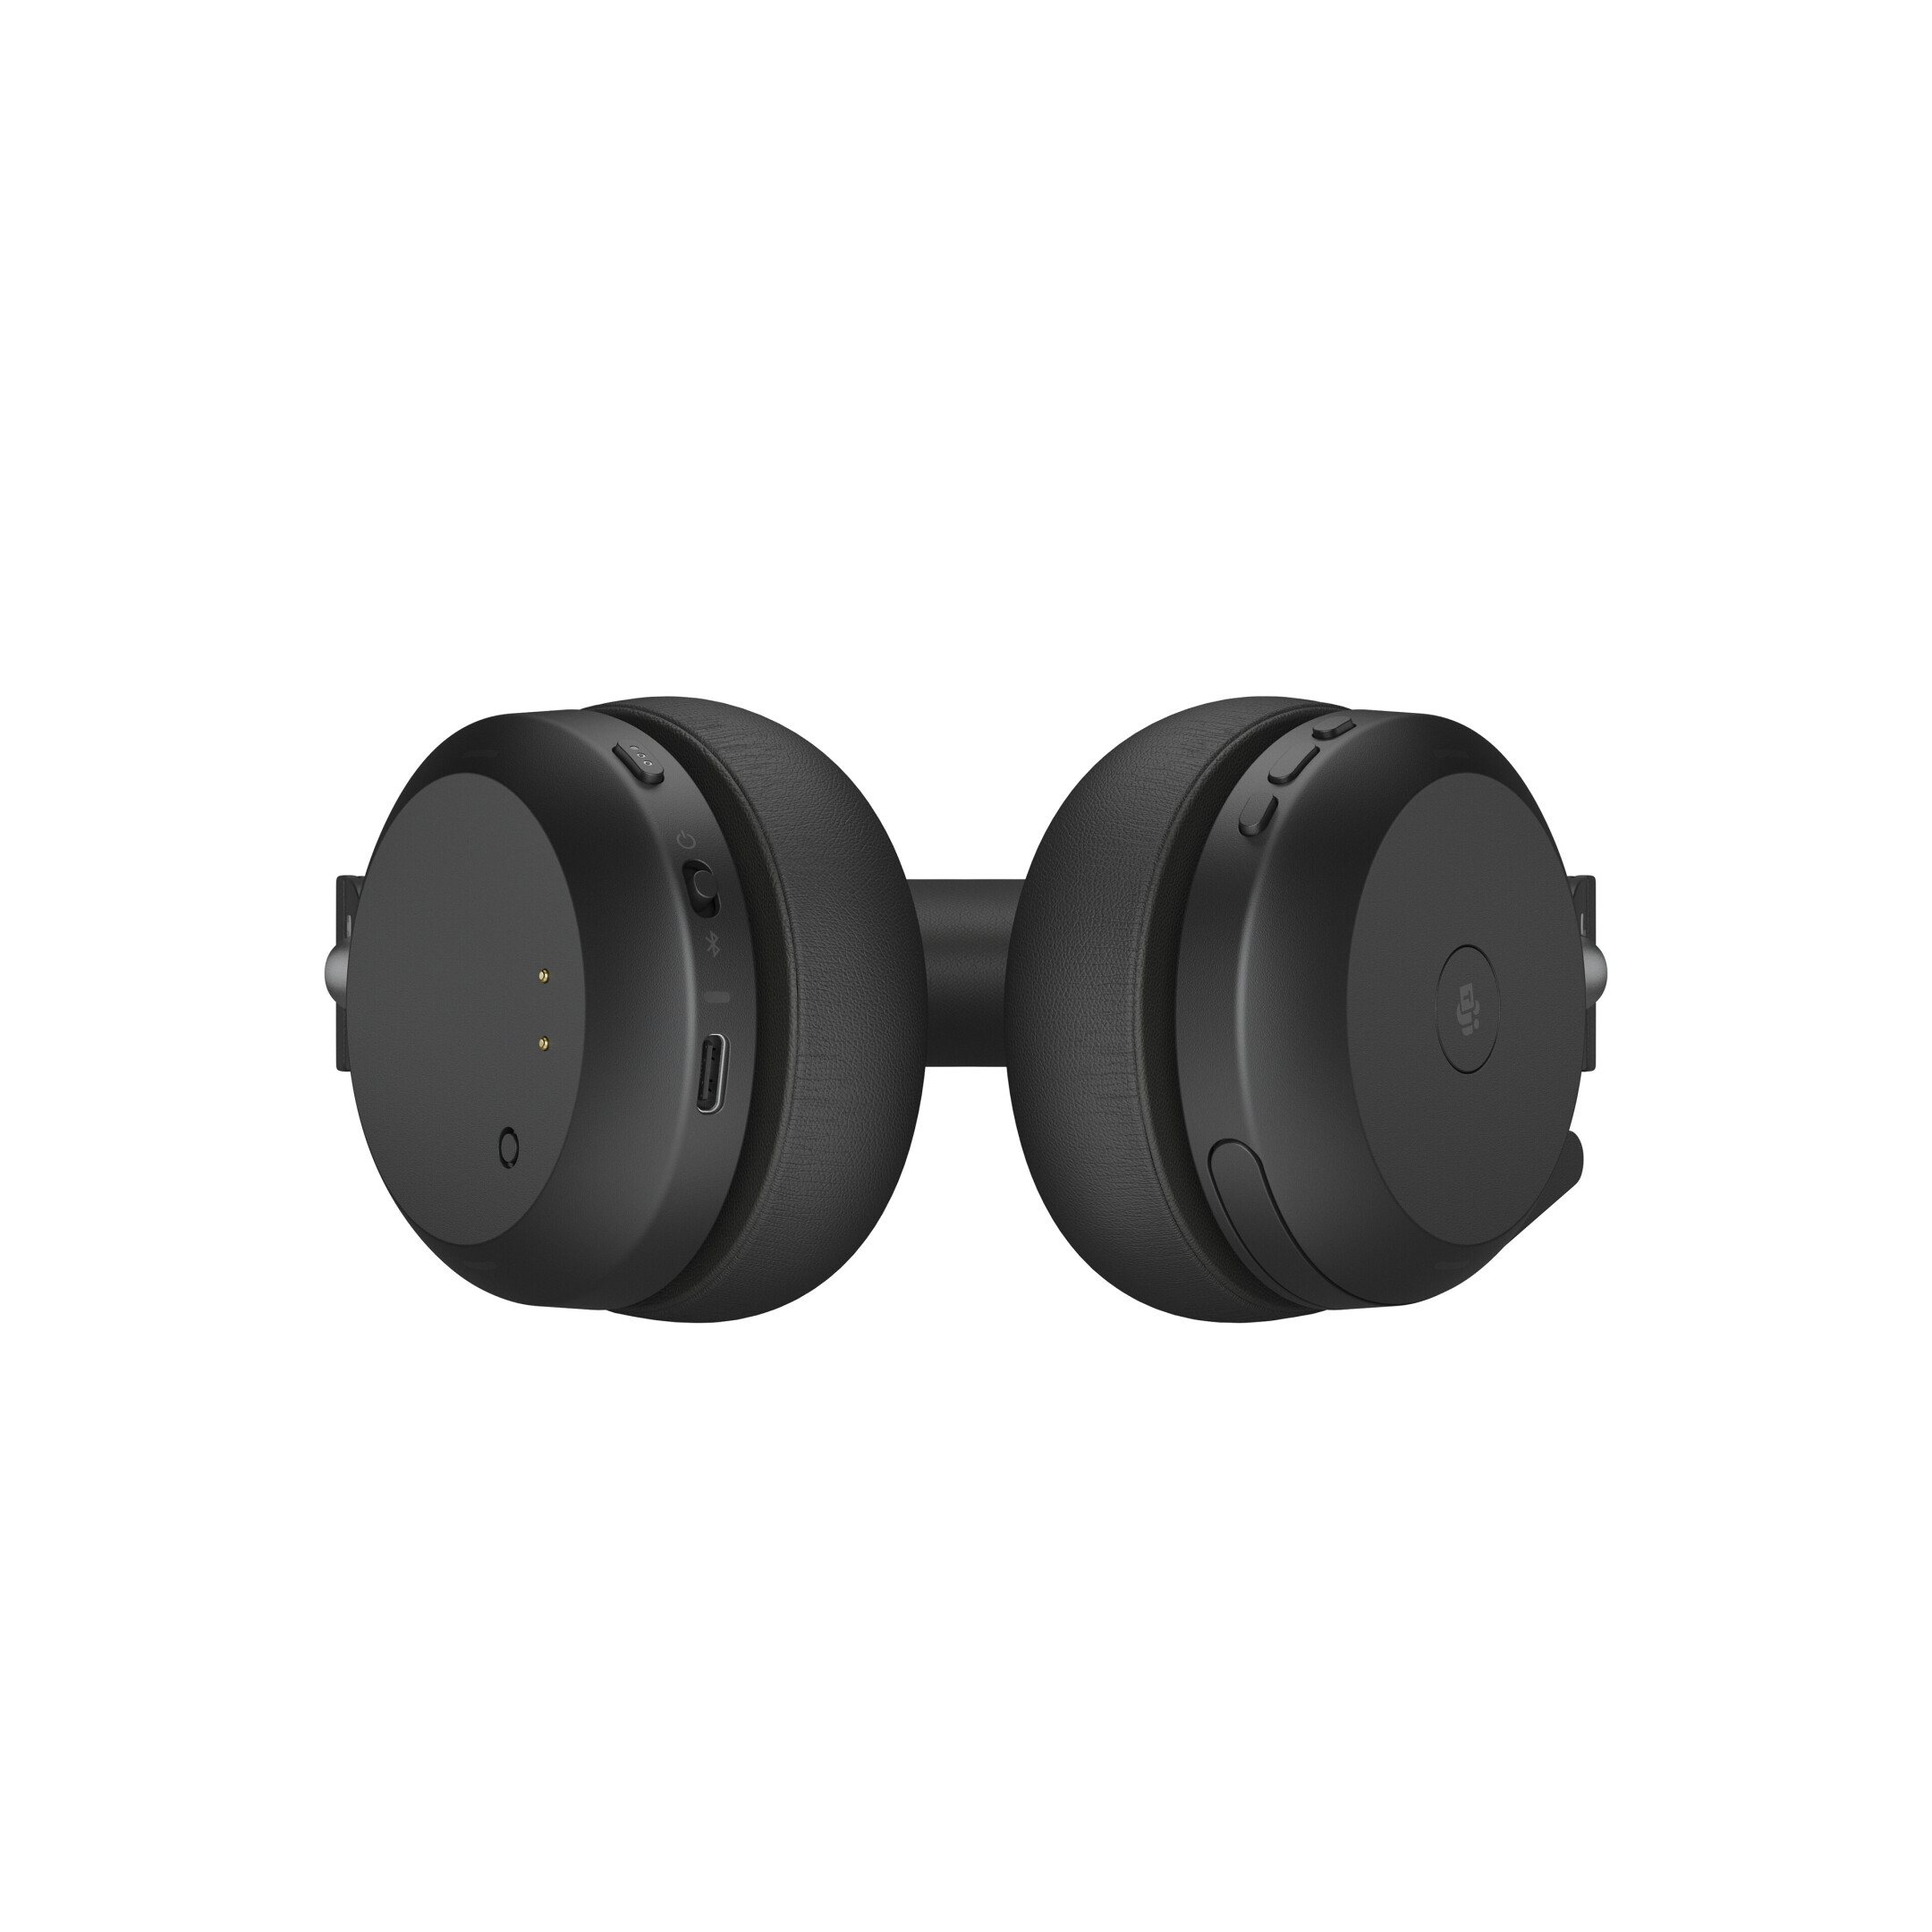 Jabra-Evolve2-75-draadloos-Stereo-Headset-voor-MS-met-Desk-Stand-Bluetooth-USB-C-aansluiting-zwart